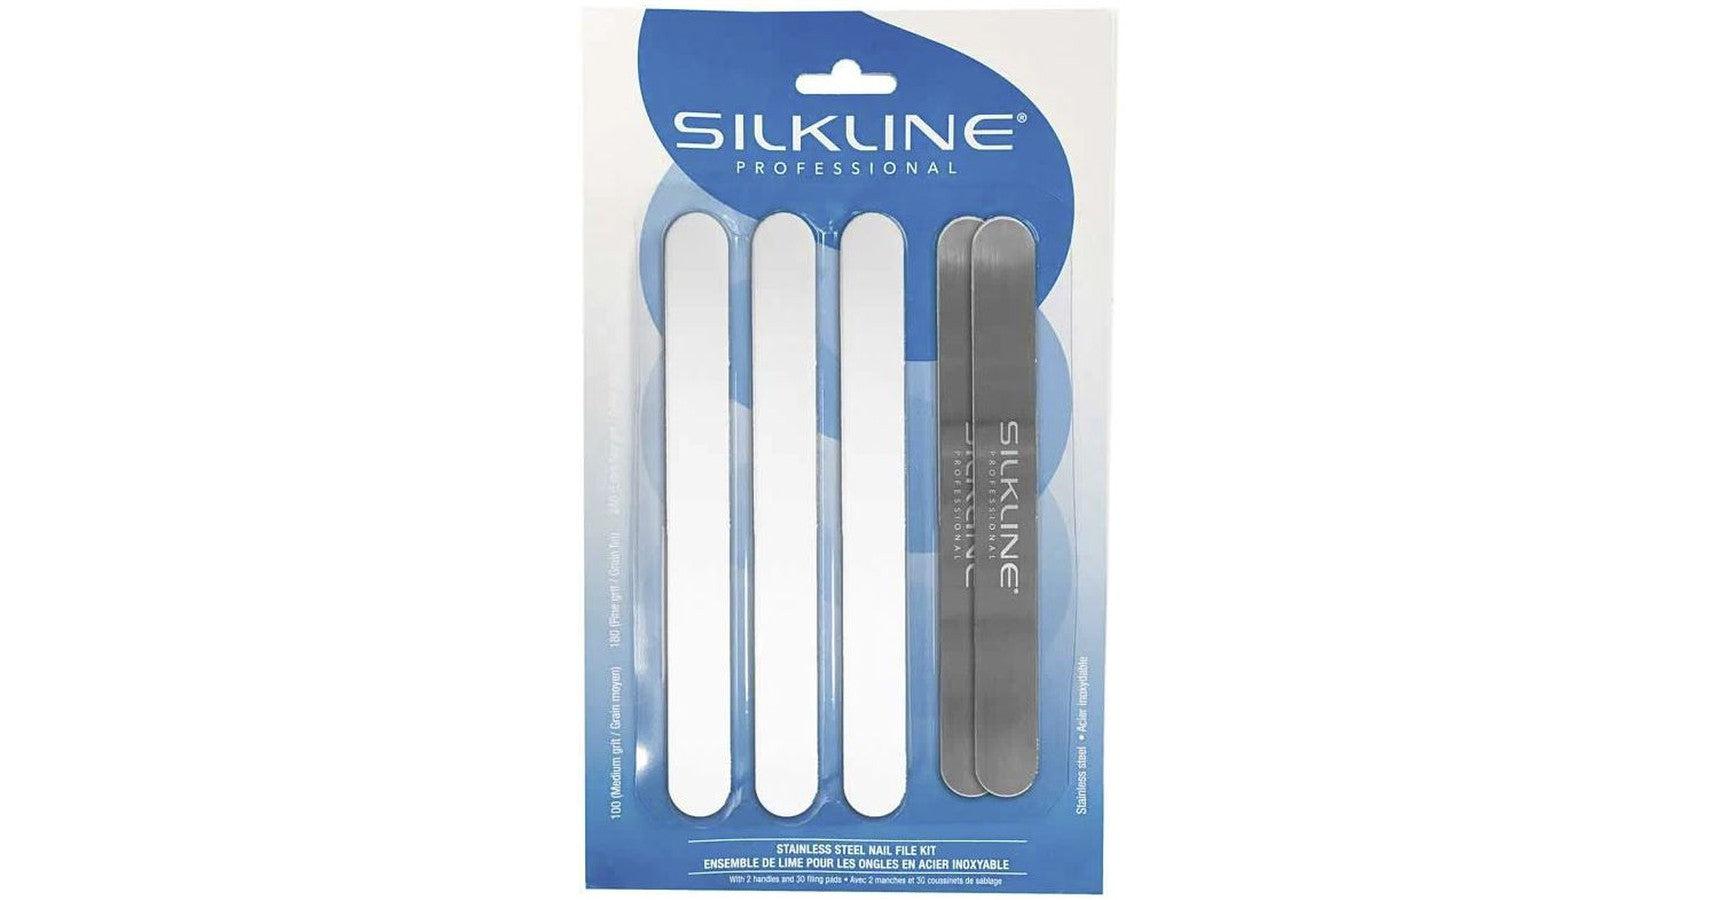 Silkline Stainless Steel Nail File Kit